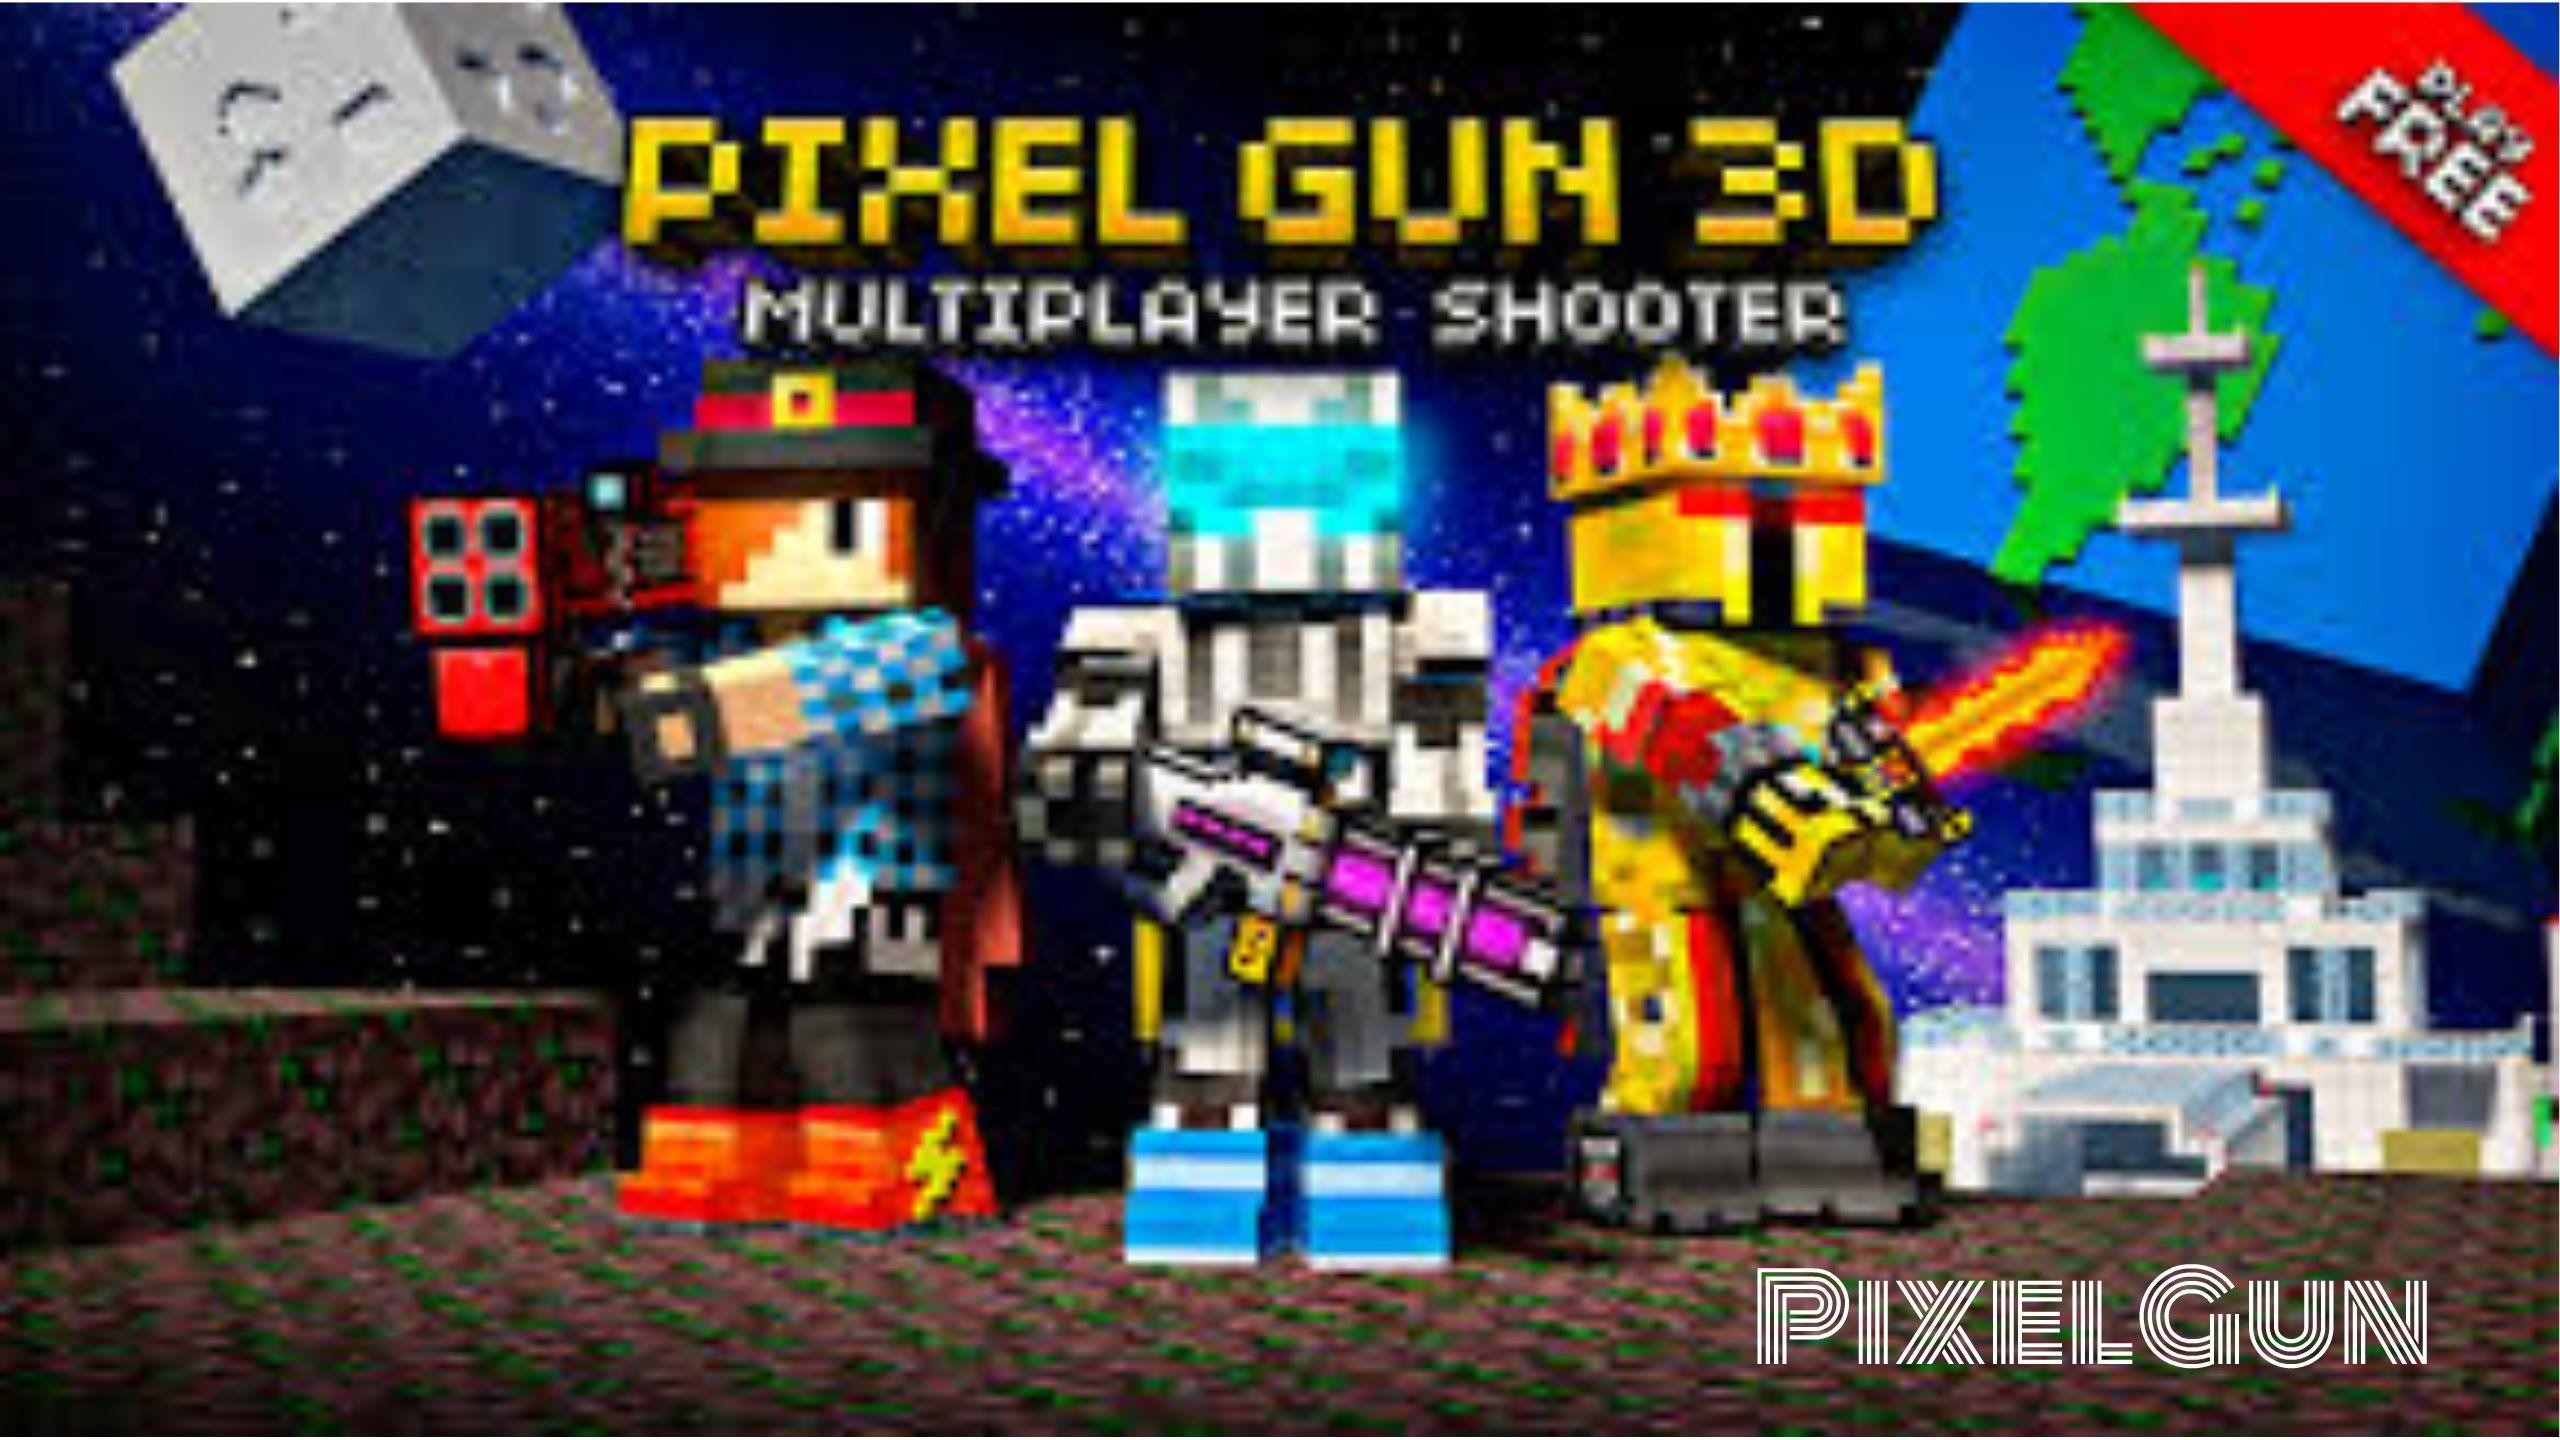 Pixel Gun 3d - Pixel Gun 3d Hd - HD Wallpaper 